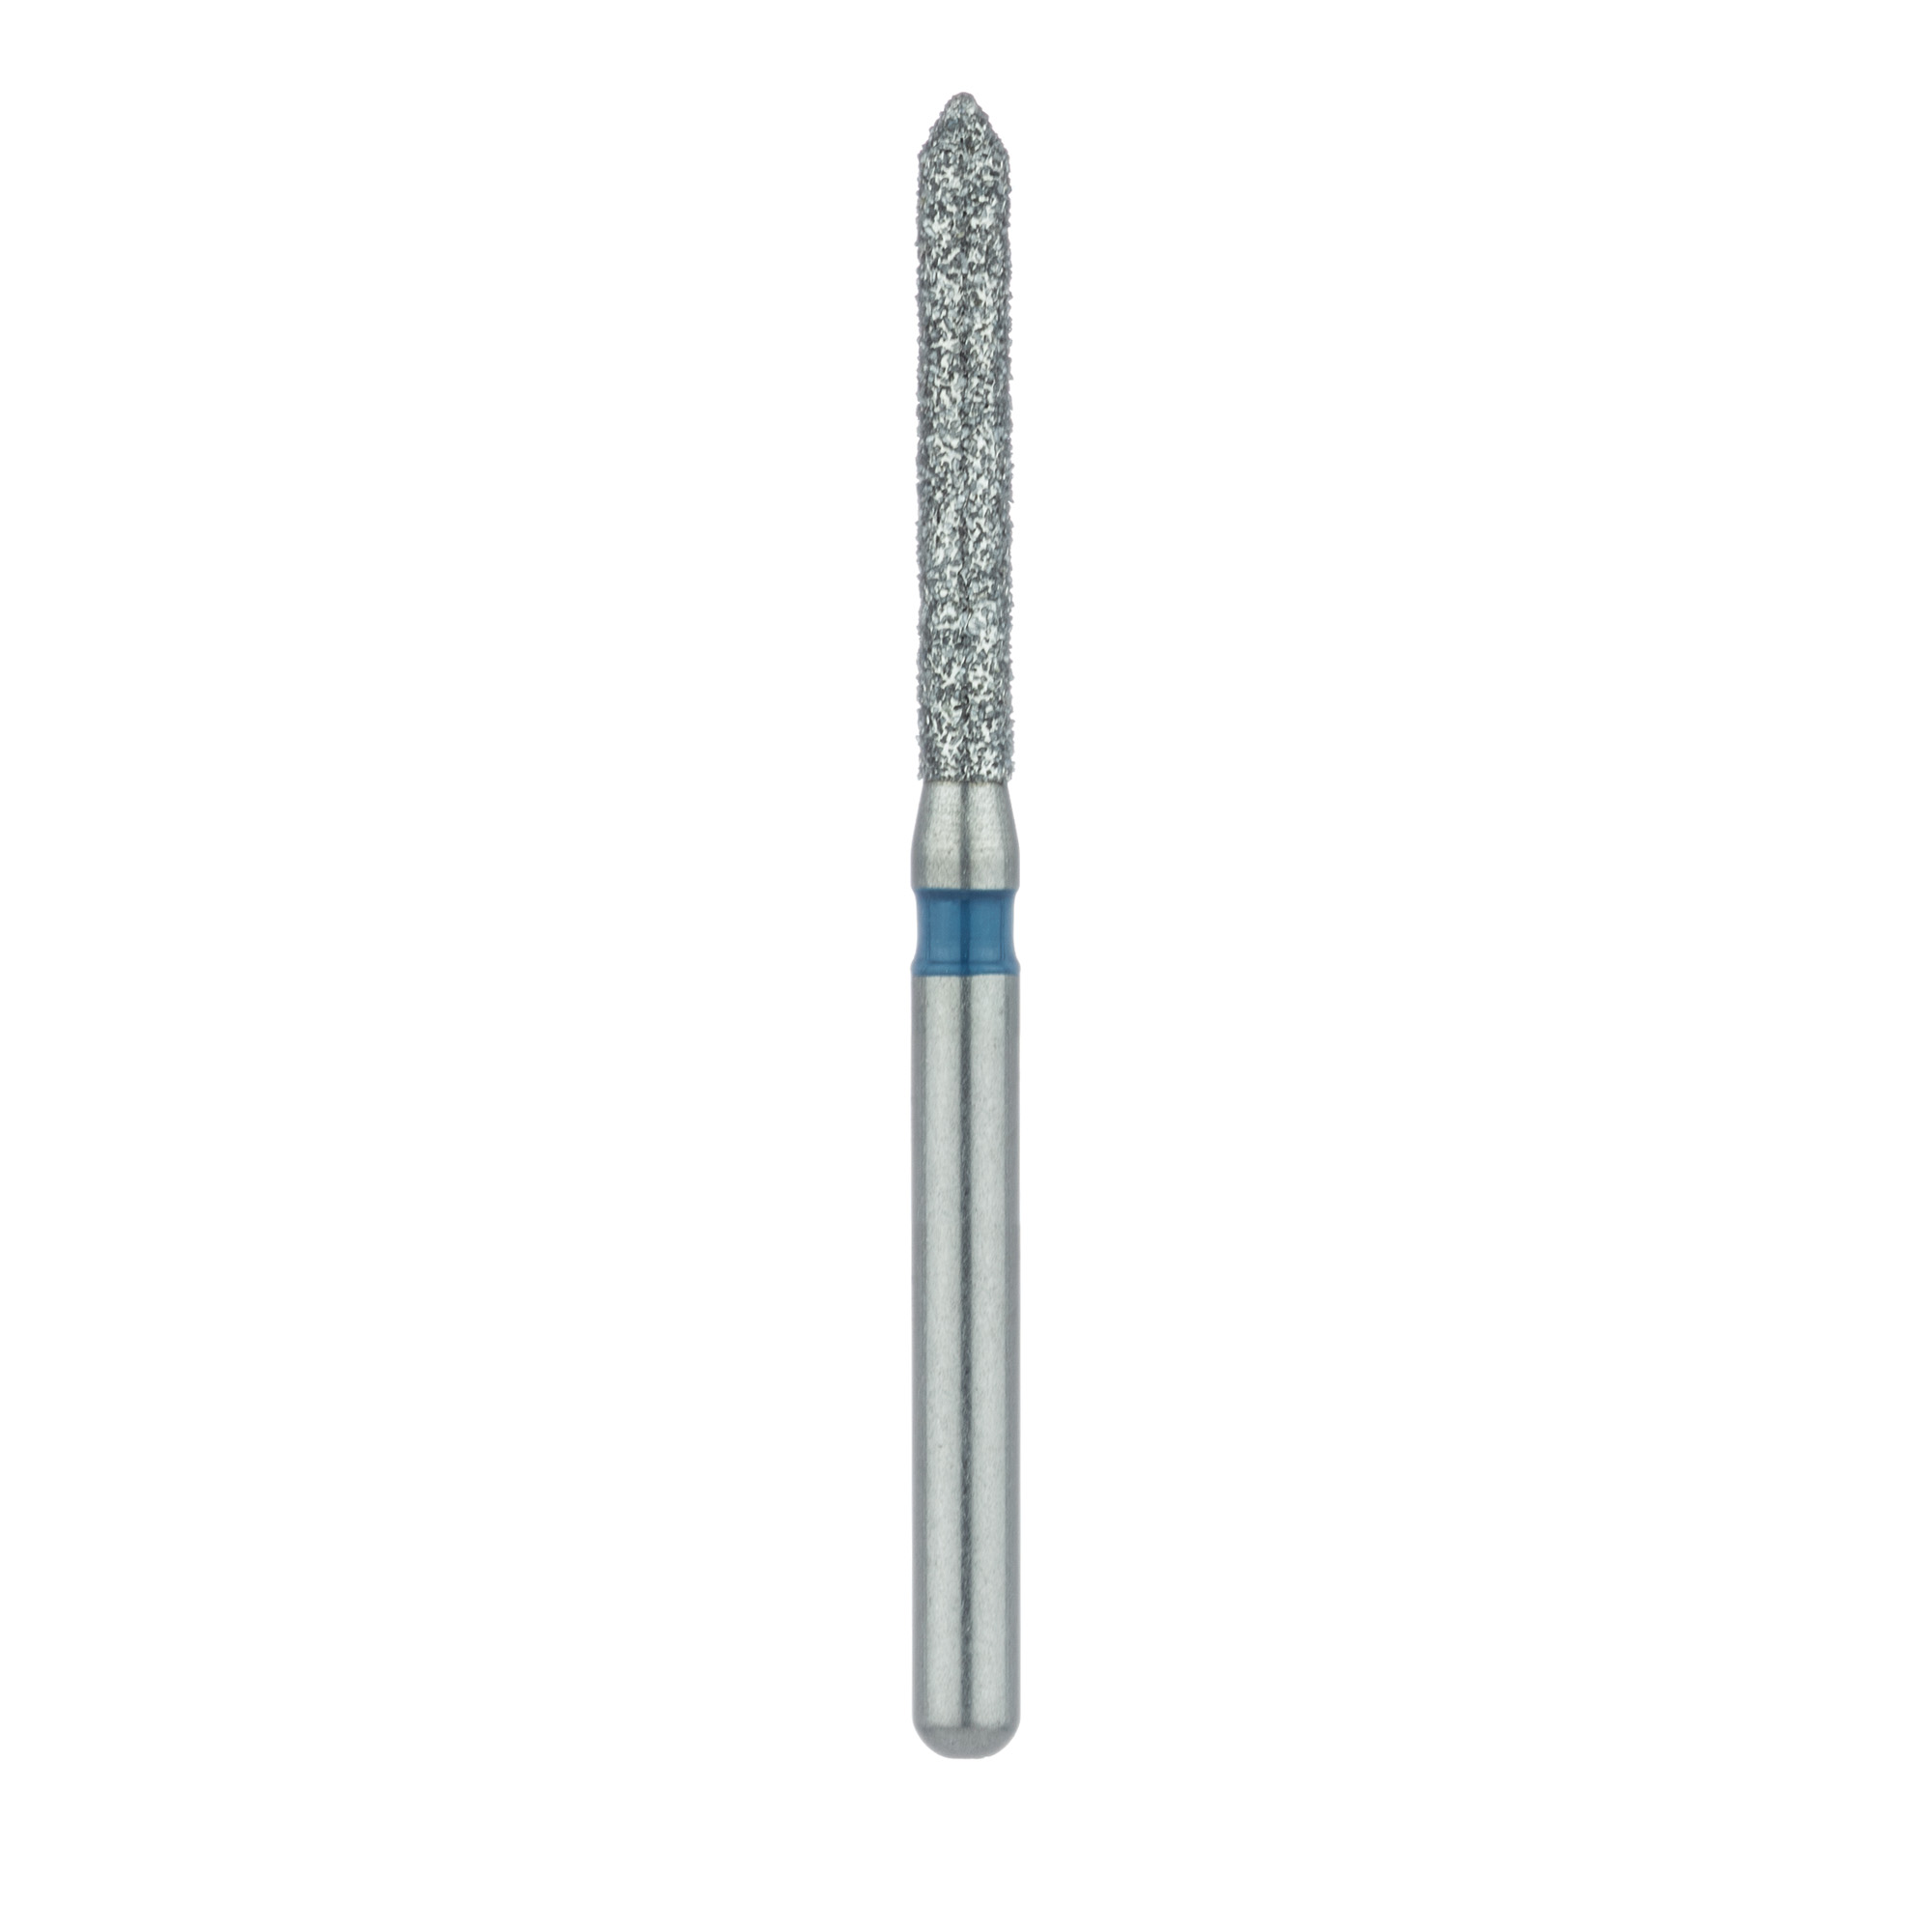 886-014-FG Long Pointed Tip Cylinder Diamond Bur, 1.4mm Ø, Medium, FG